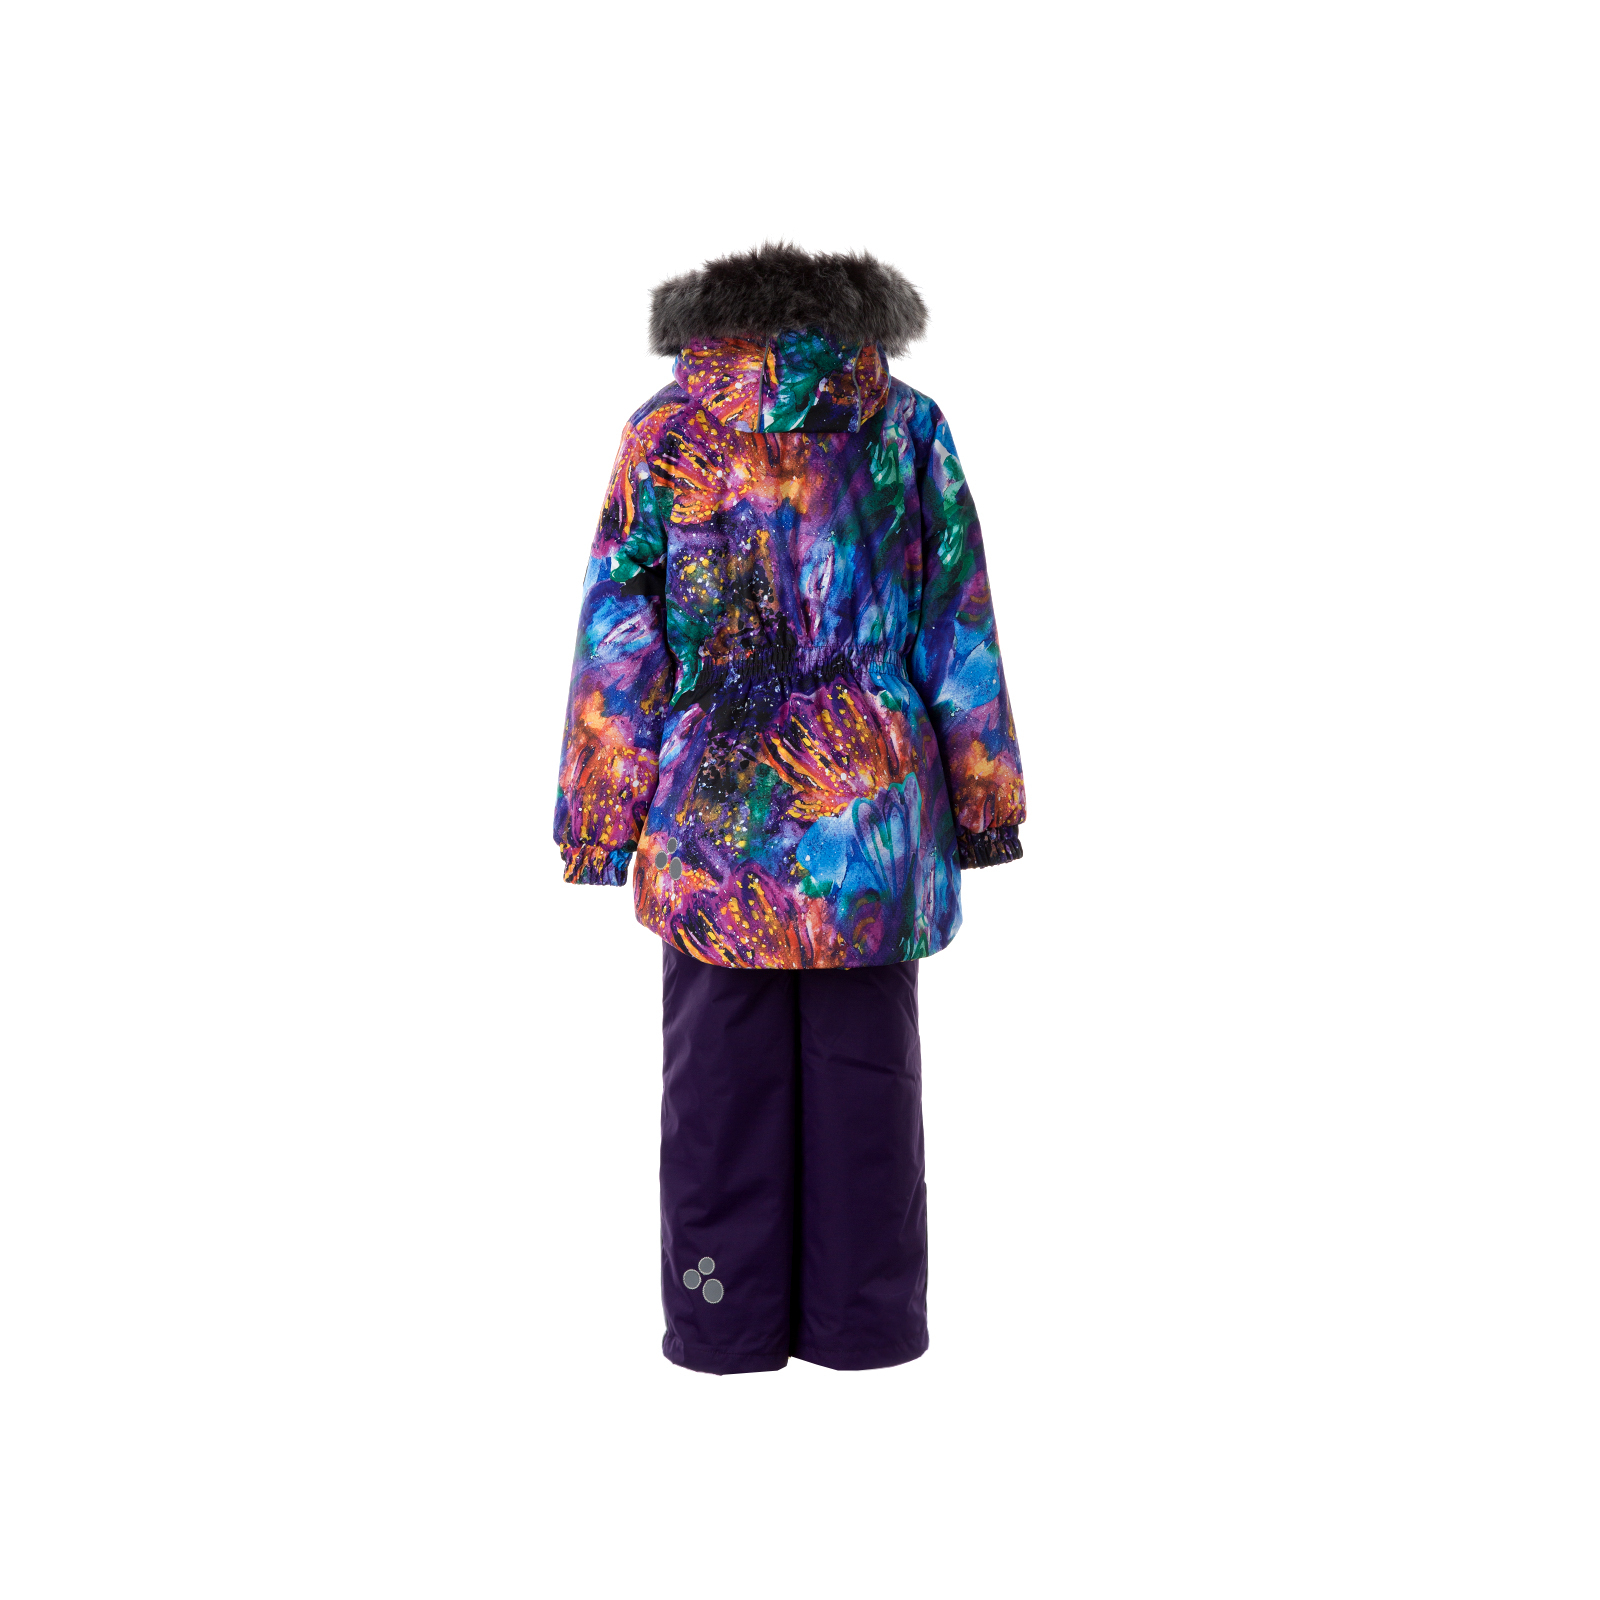 Комплект верхней одежды Huppa RENELY 2 41850230 пурпур с принтом/тёмно-лилoвый 110 (4741468979021) изображение 2